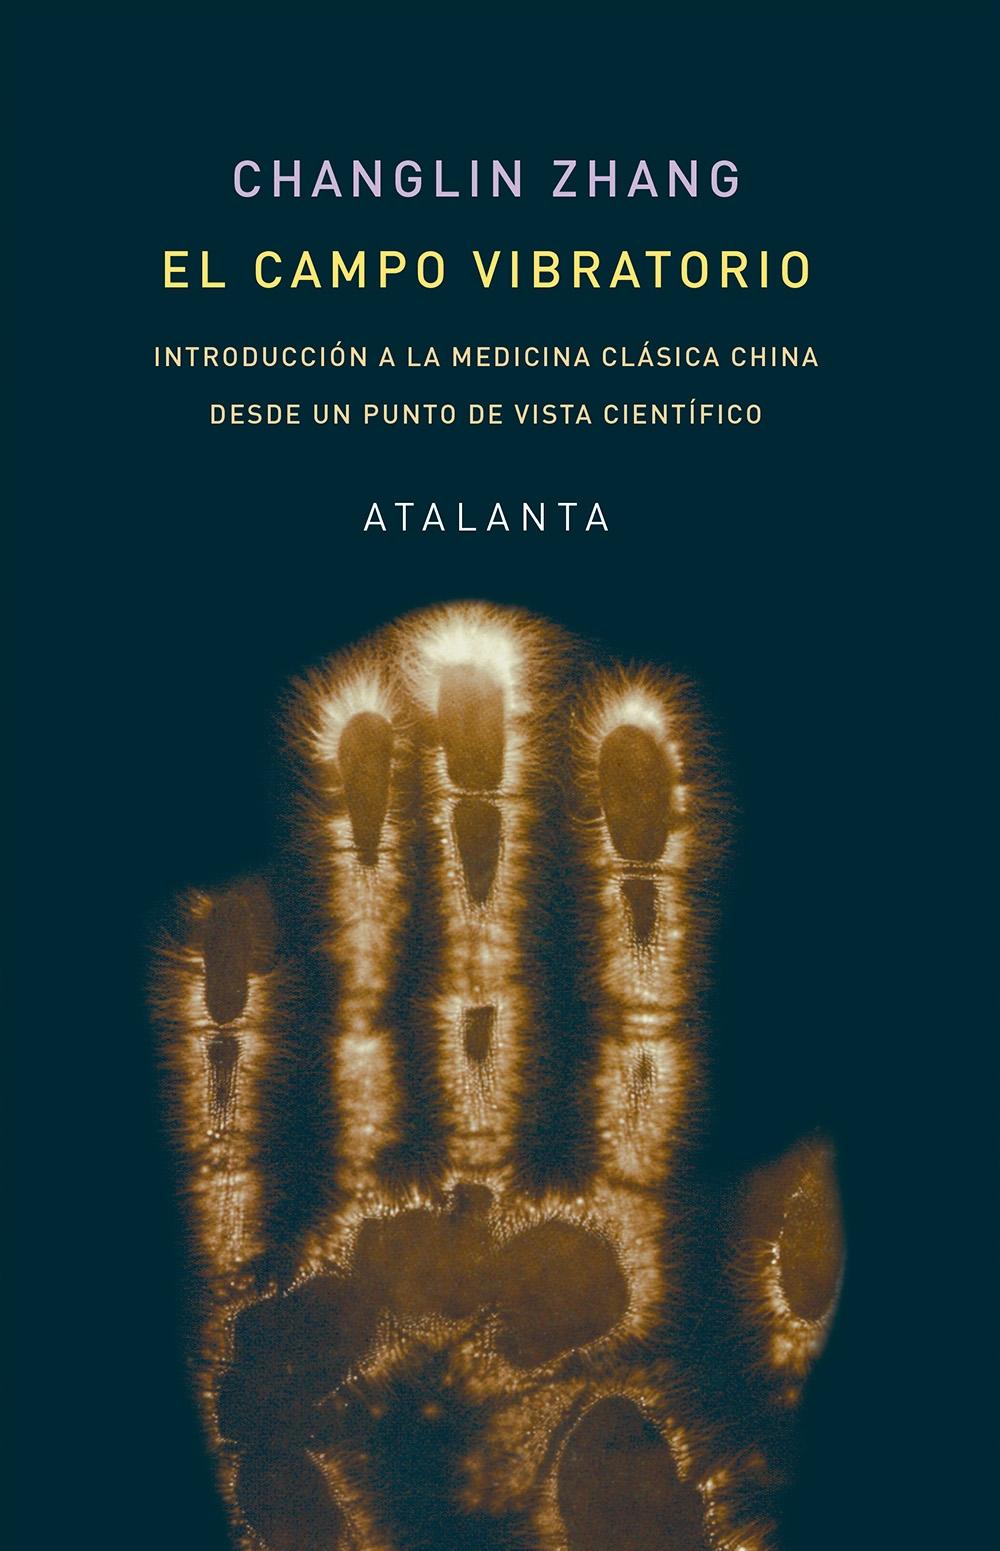 El Campo Vibratorio "Introducción a la Medicina Clásica China desde un Punto de Vista Científico"